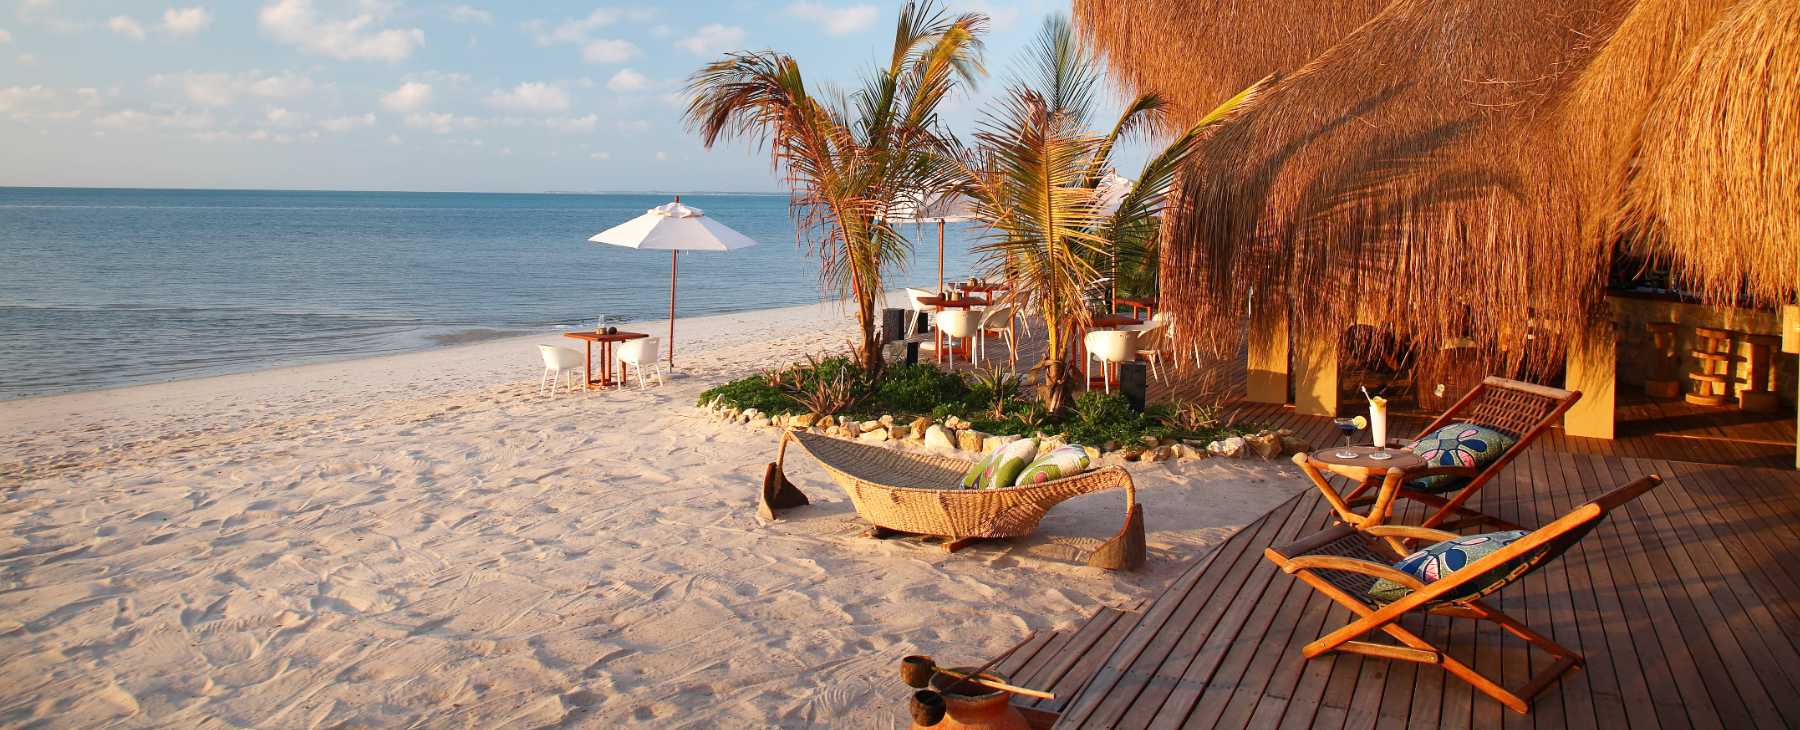 Luxushotel Azura Benguerra Island Mozambique